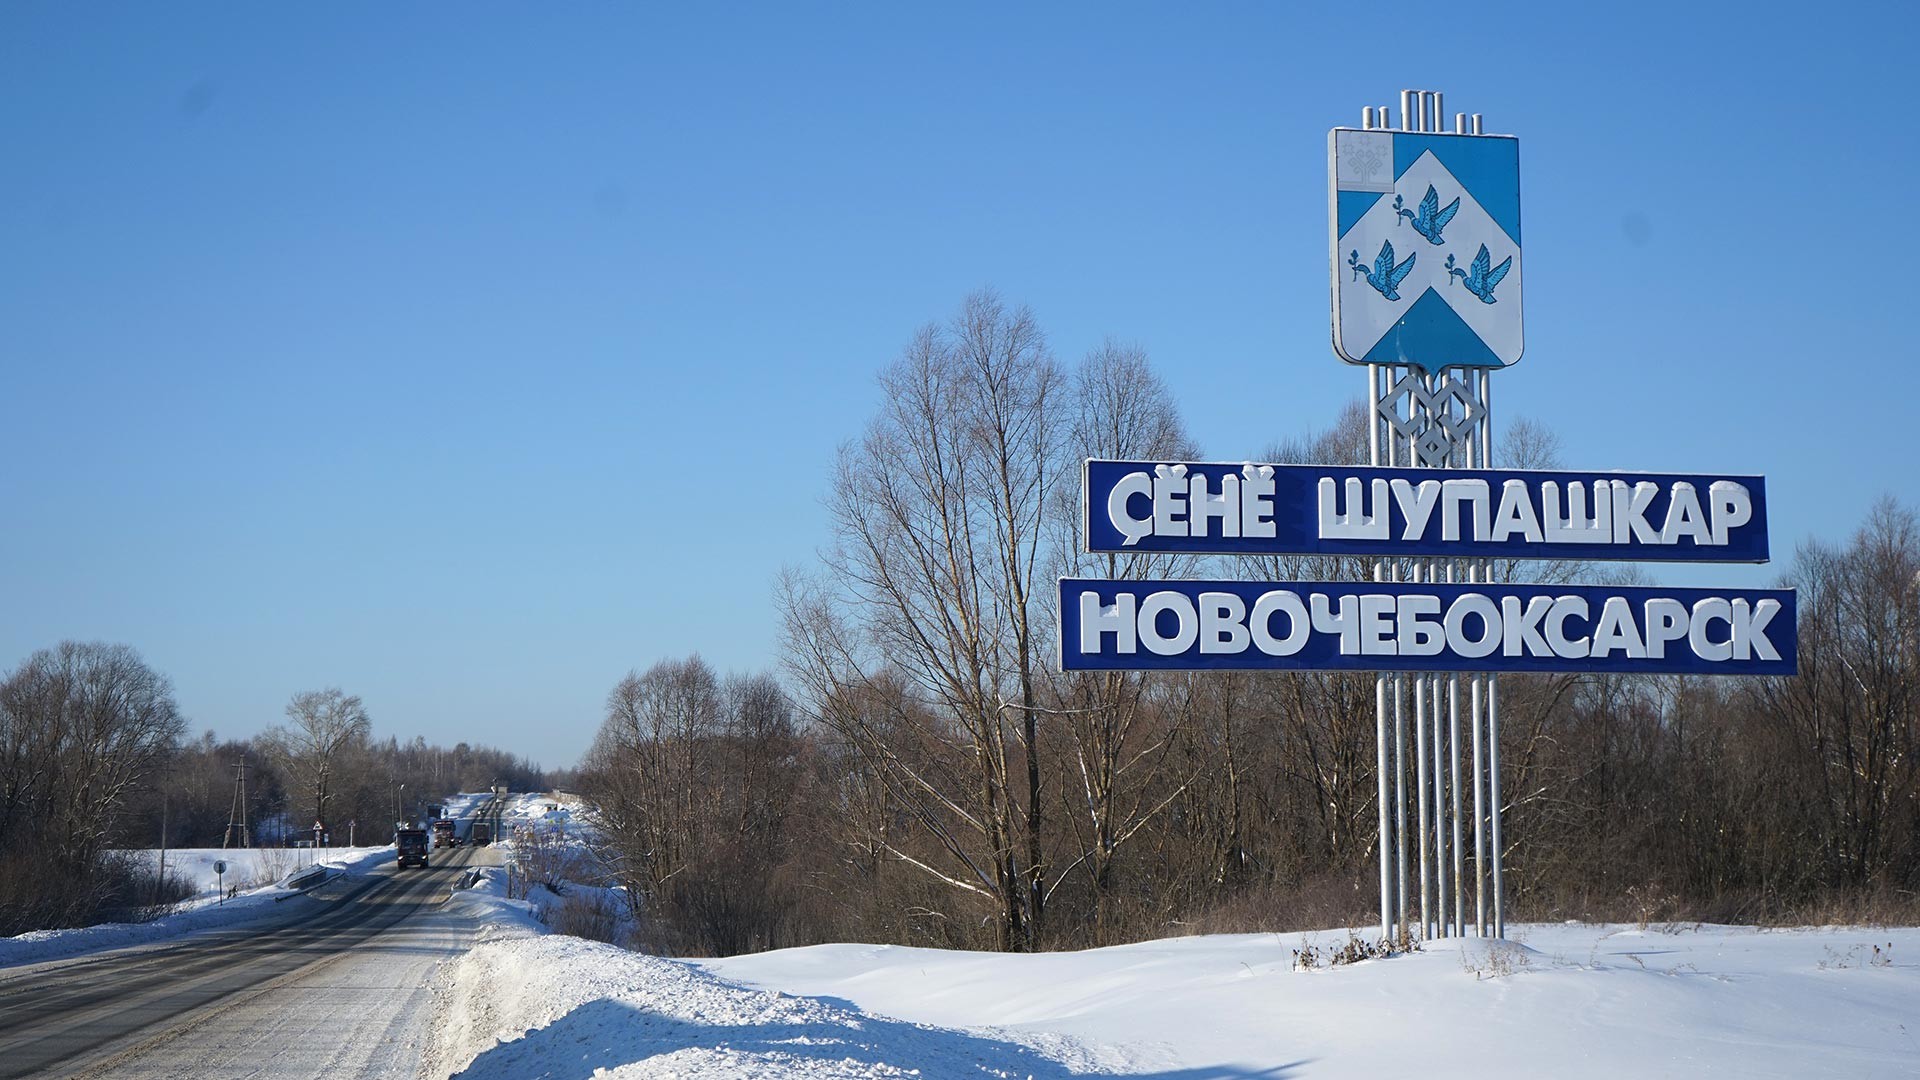 Република Чувашија, Небочебоксарск. Улаз у град.